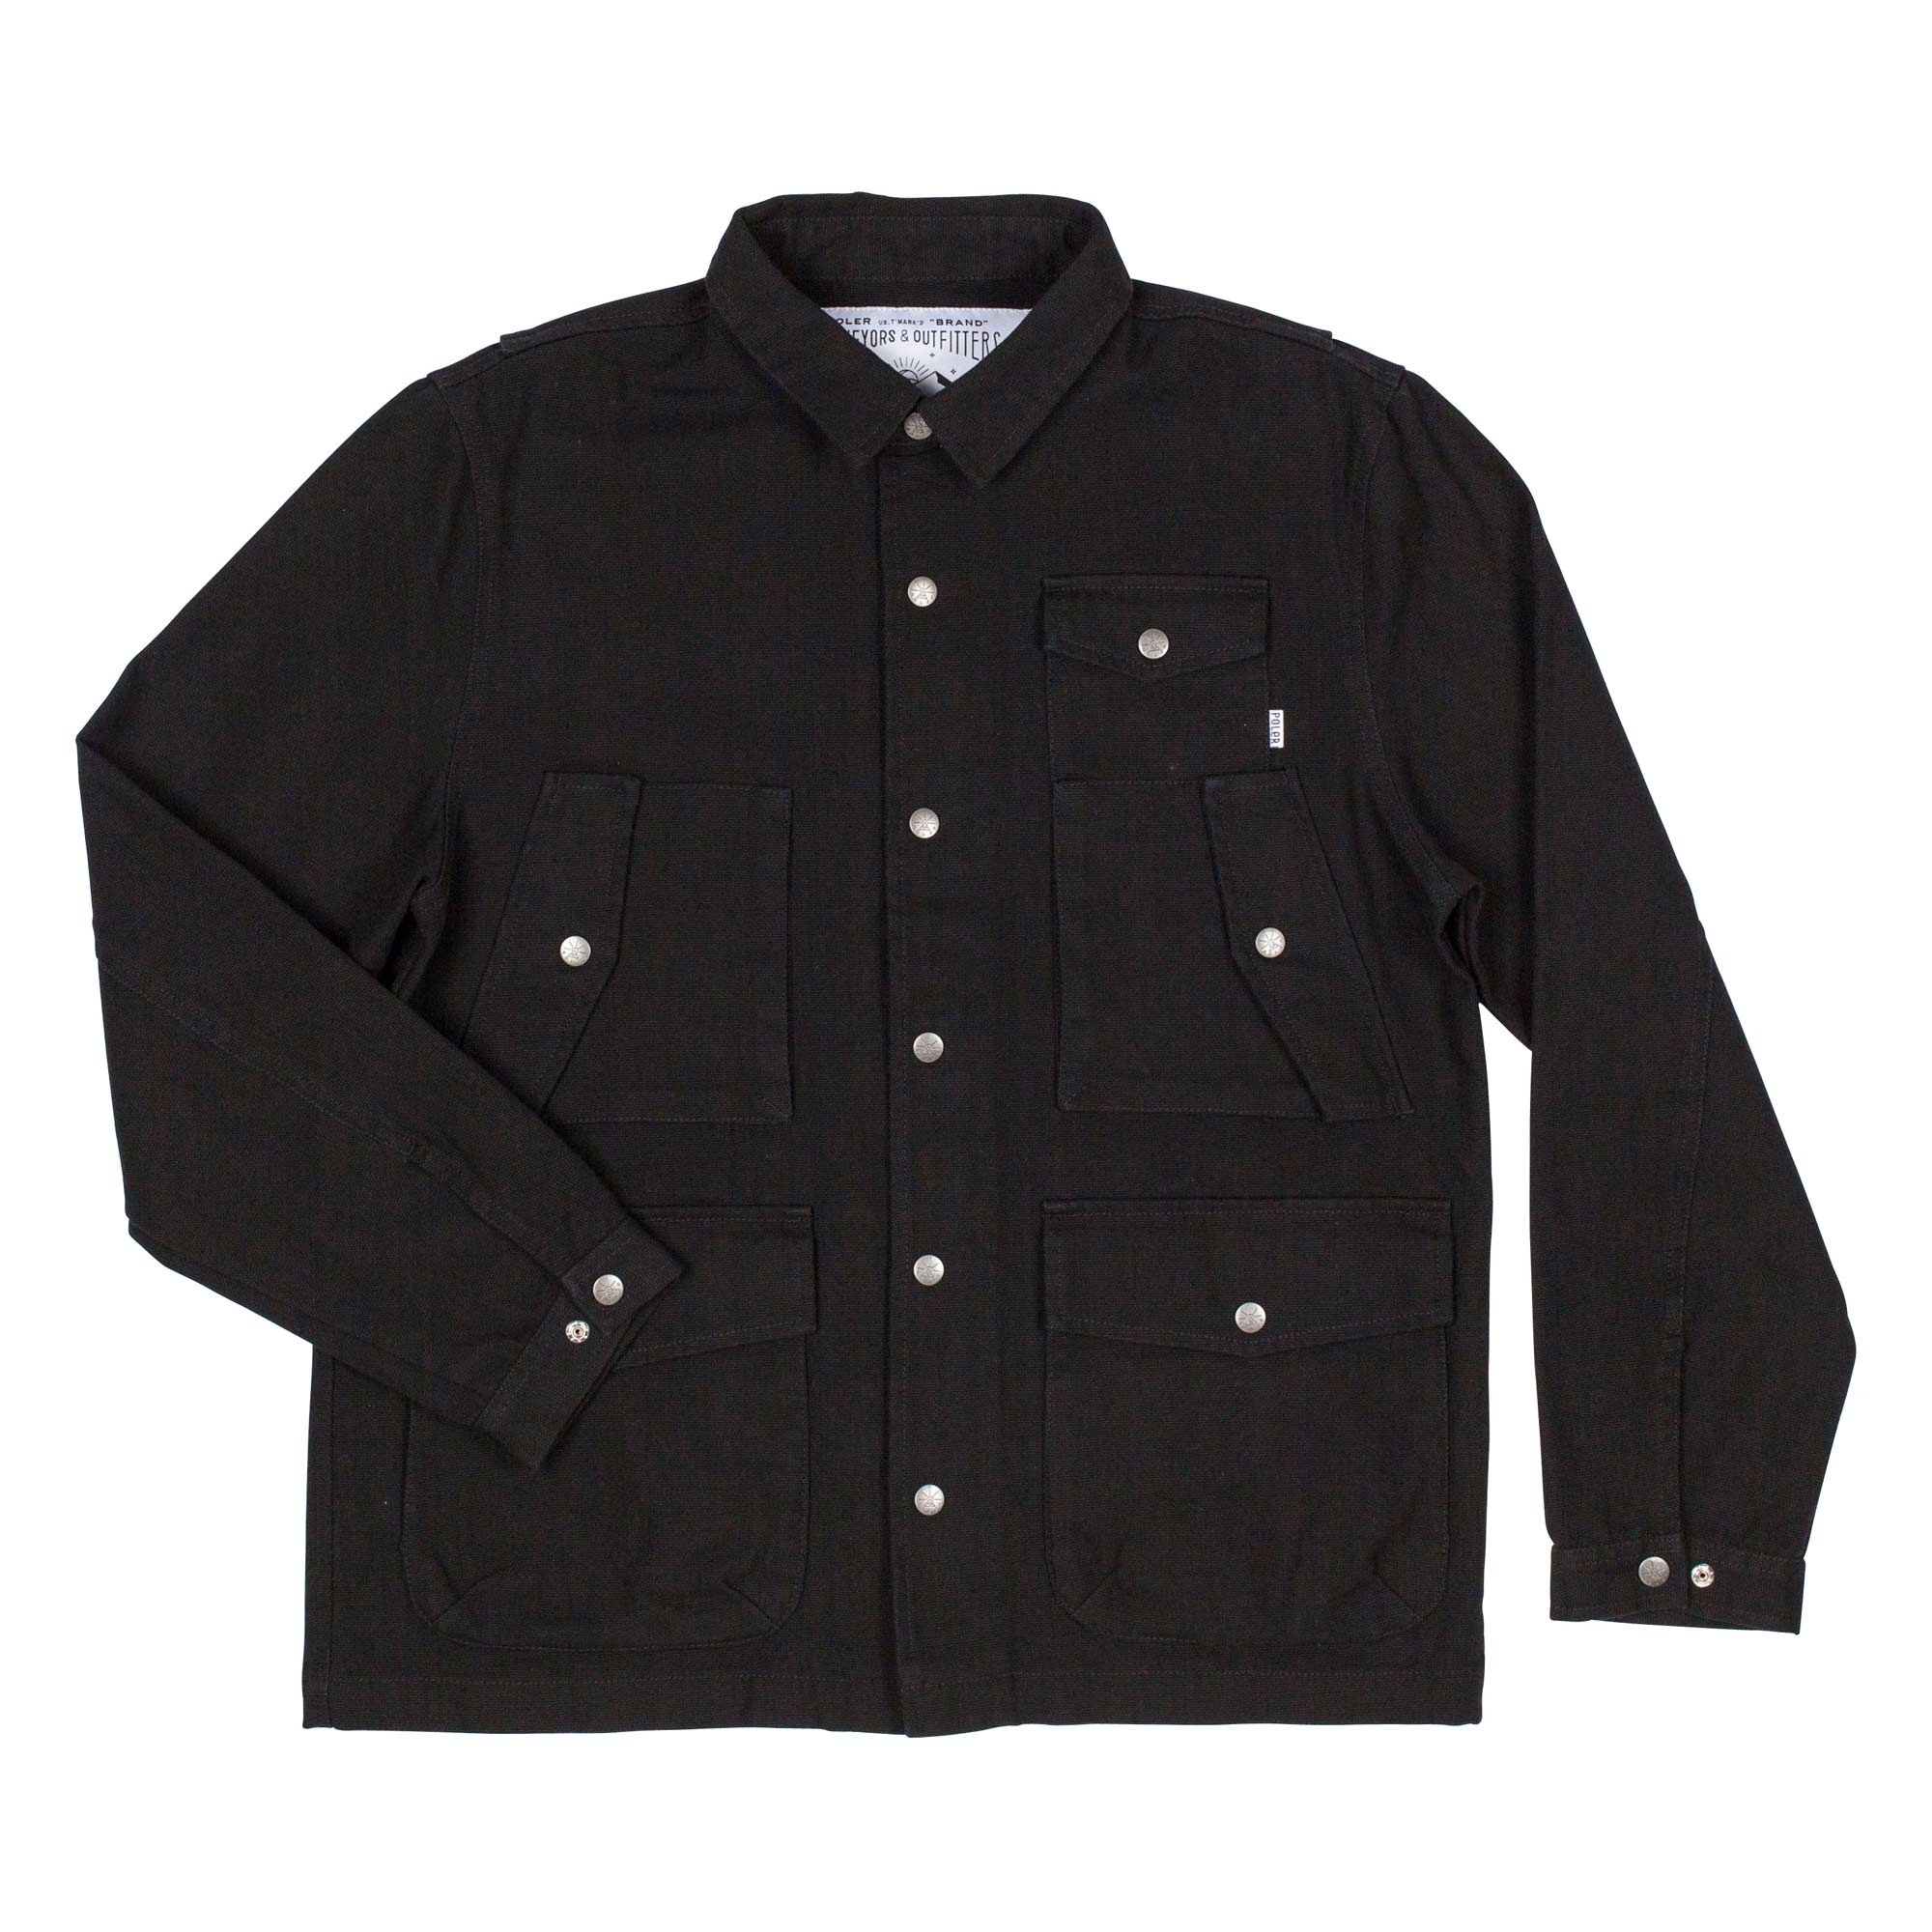 POLER Jacket KUBRICK, black